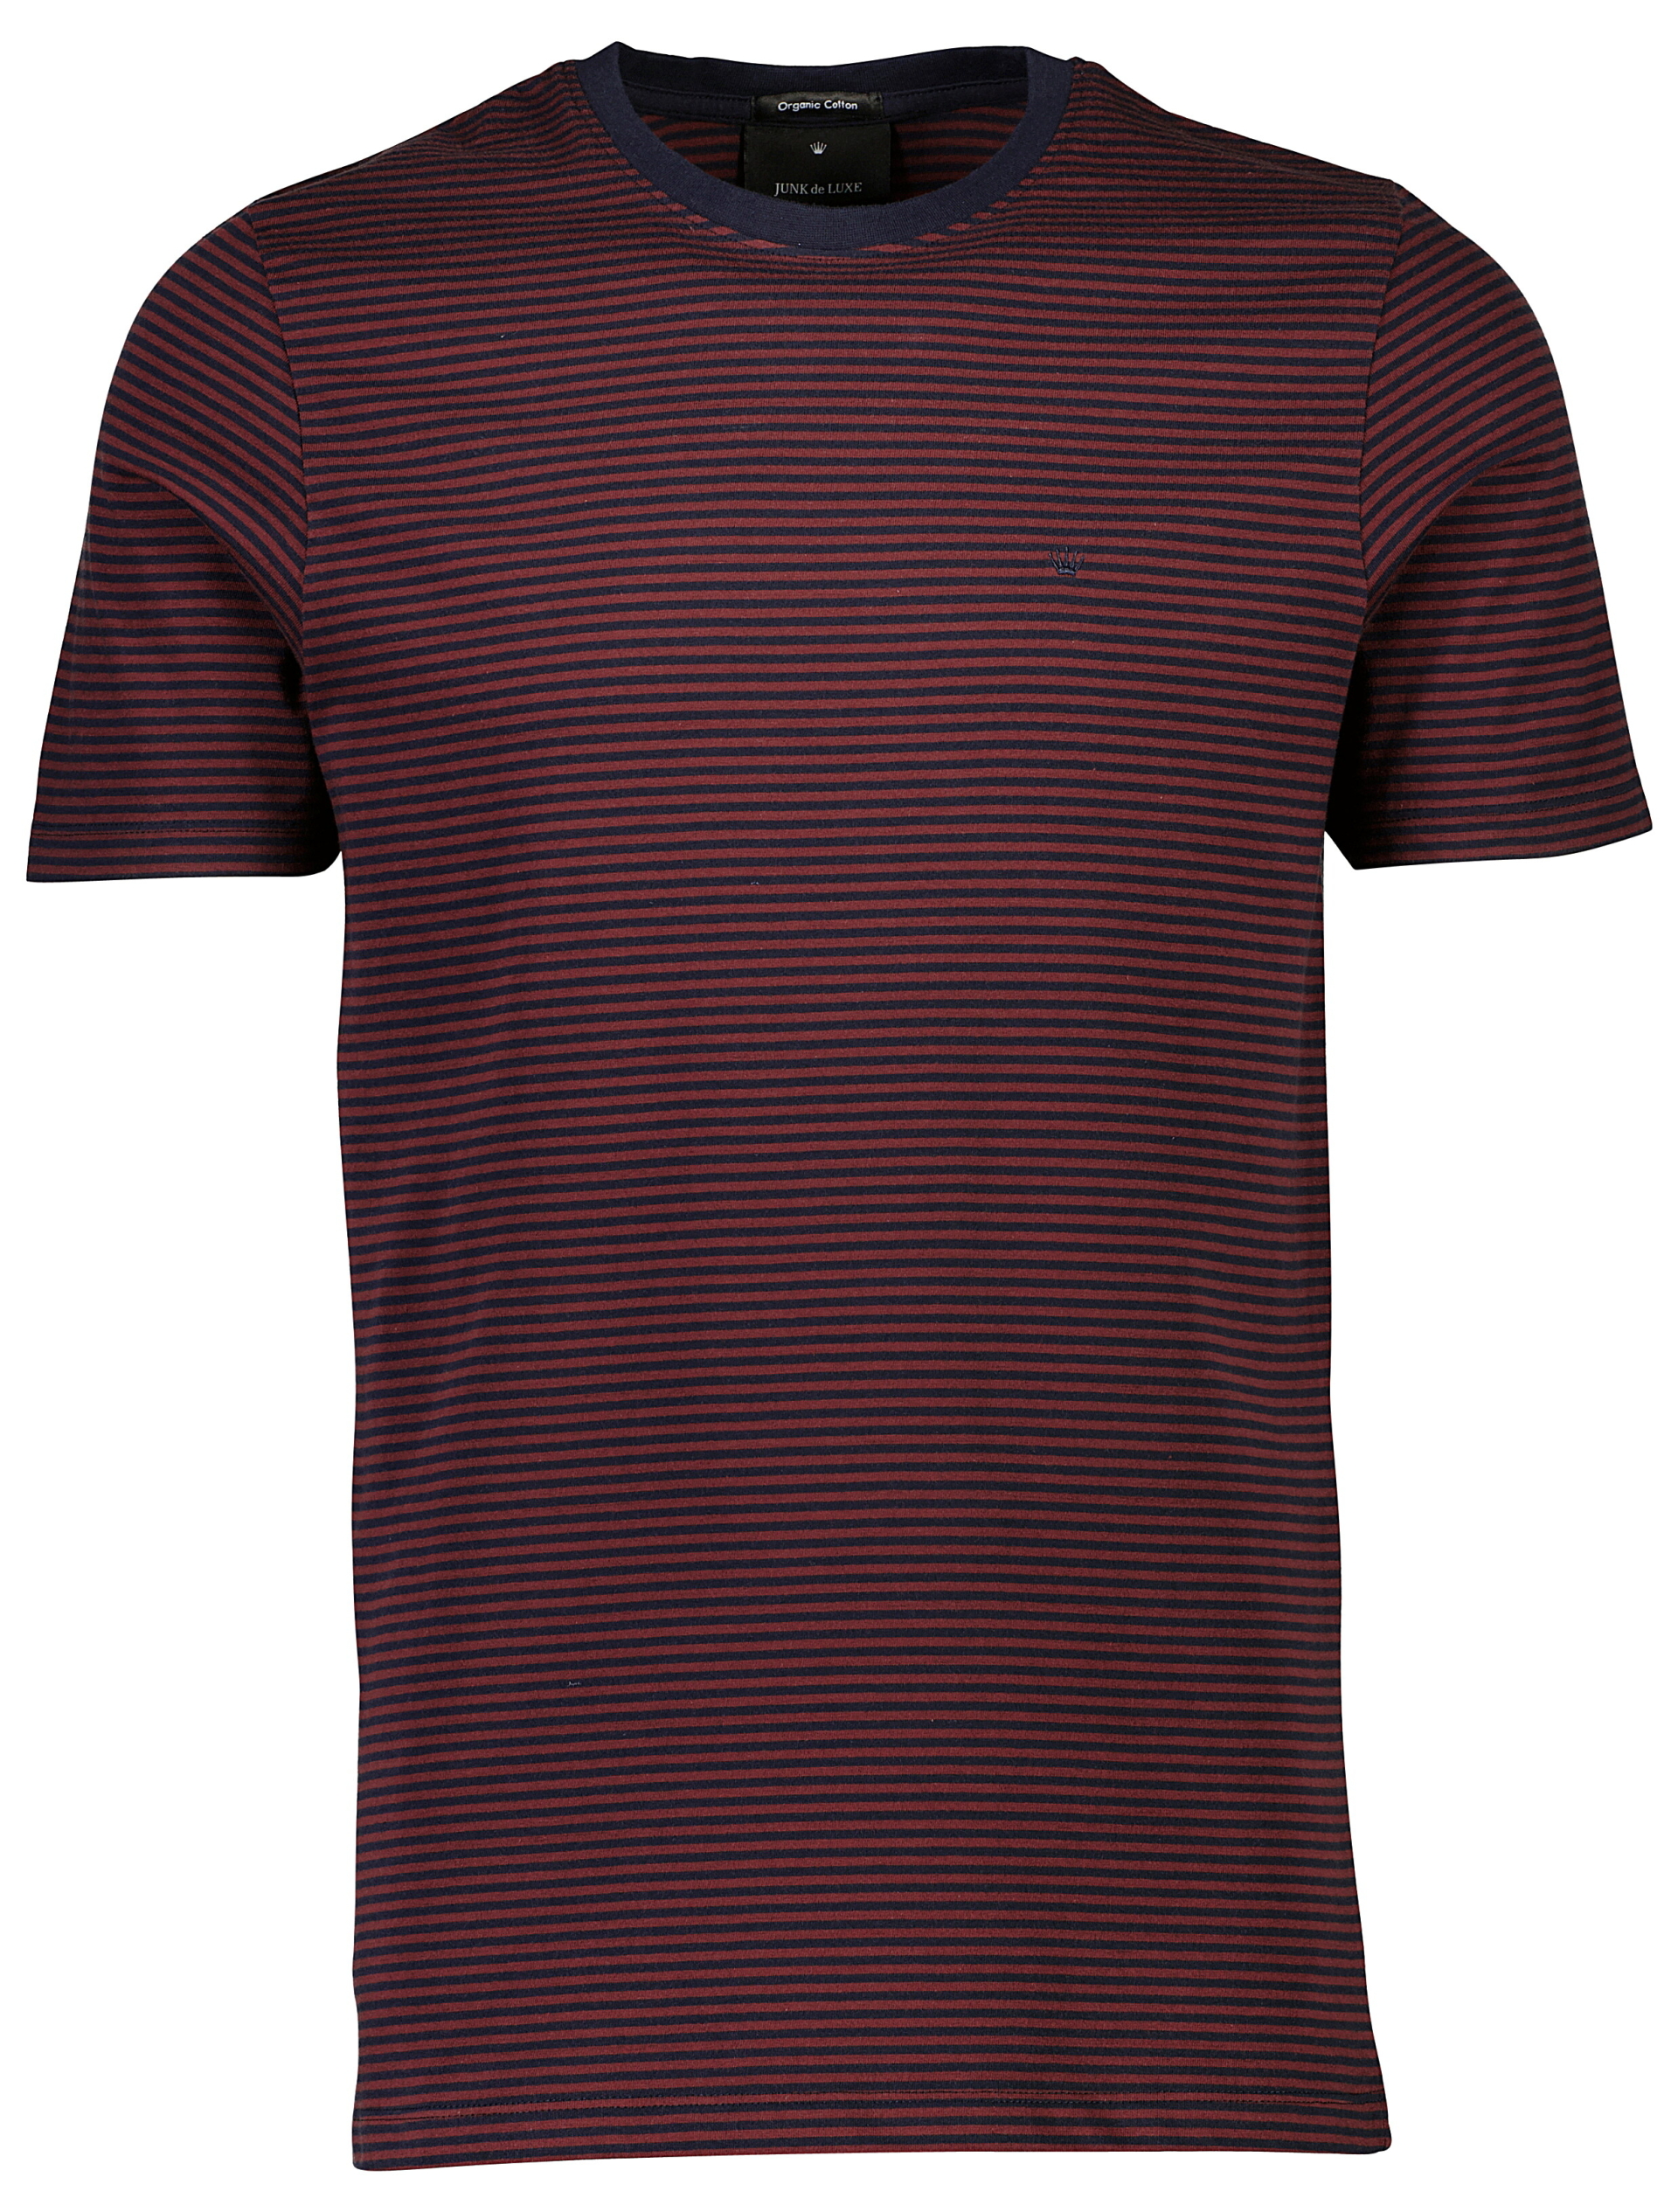 Junk de Luxe T-shirt röd / dk burgundy